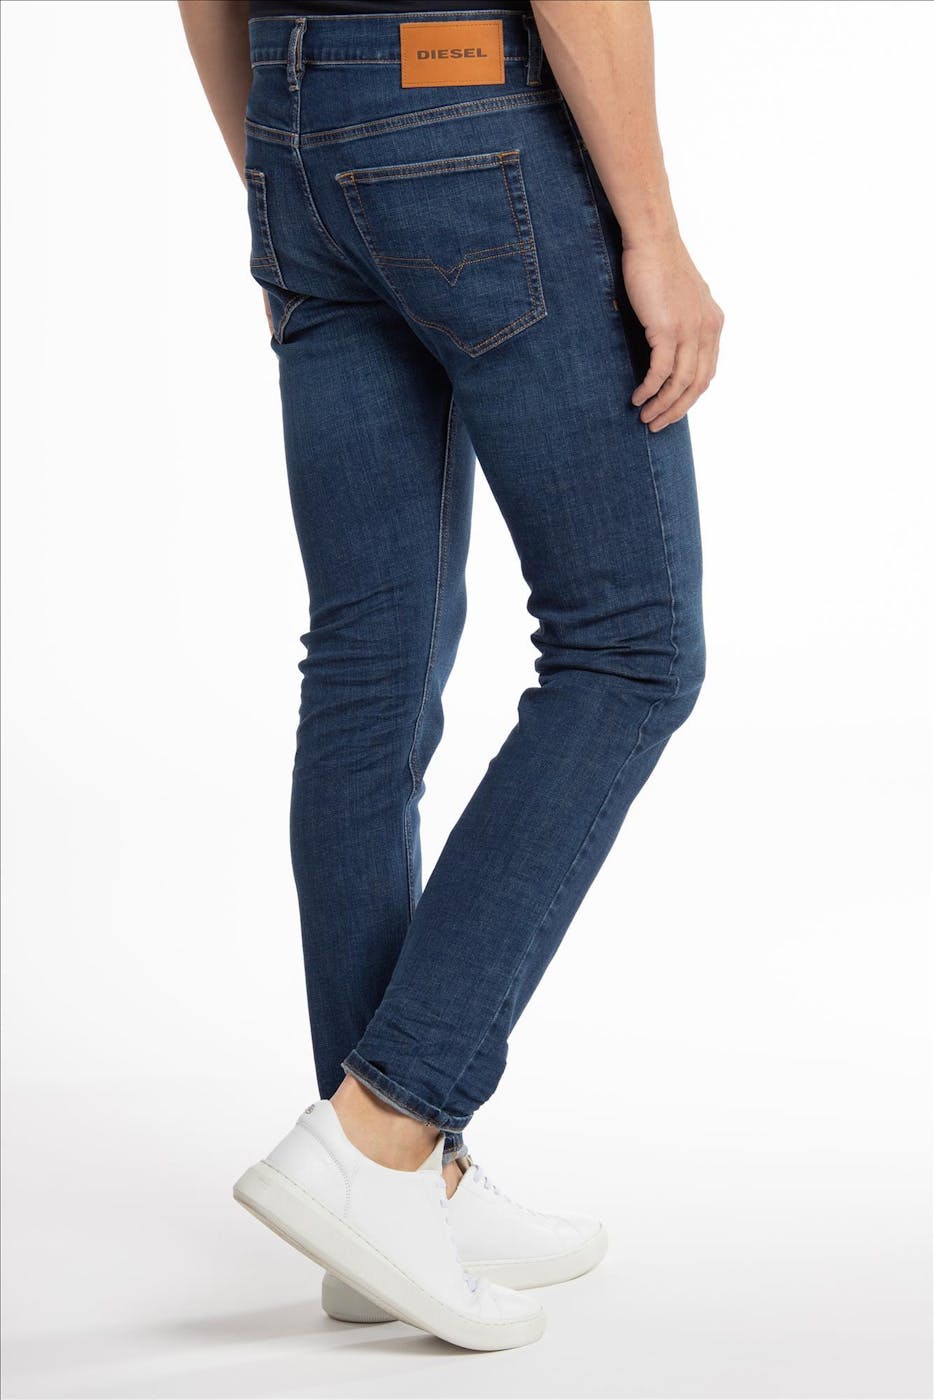 Diesel - Donkerblauwe D-Luster slim tapered jeans